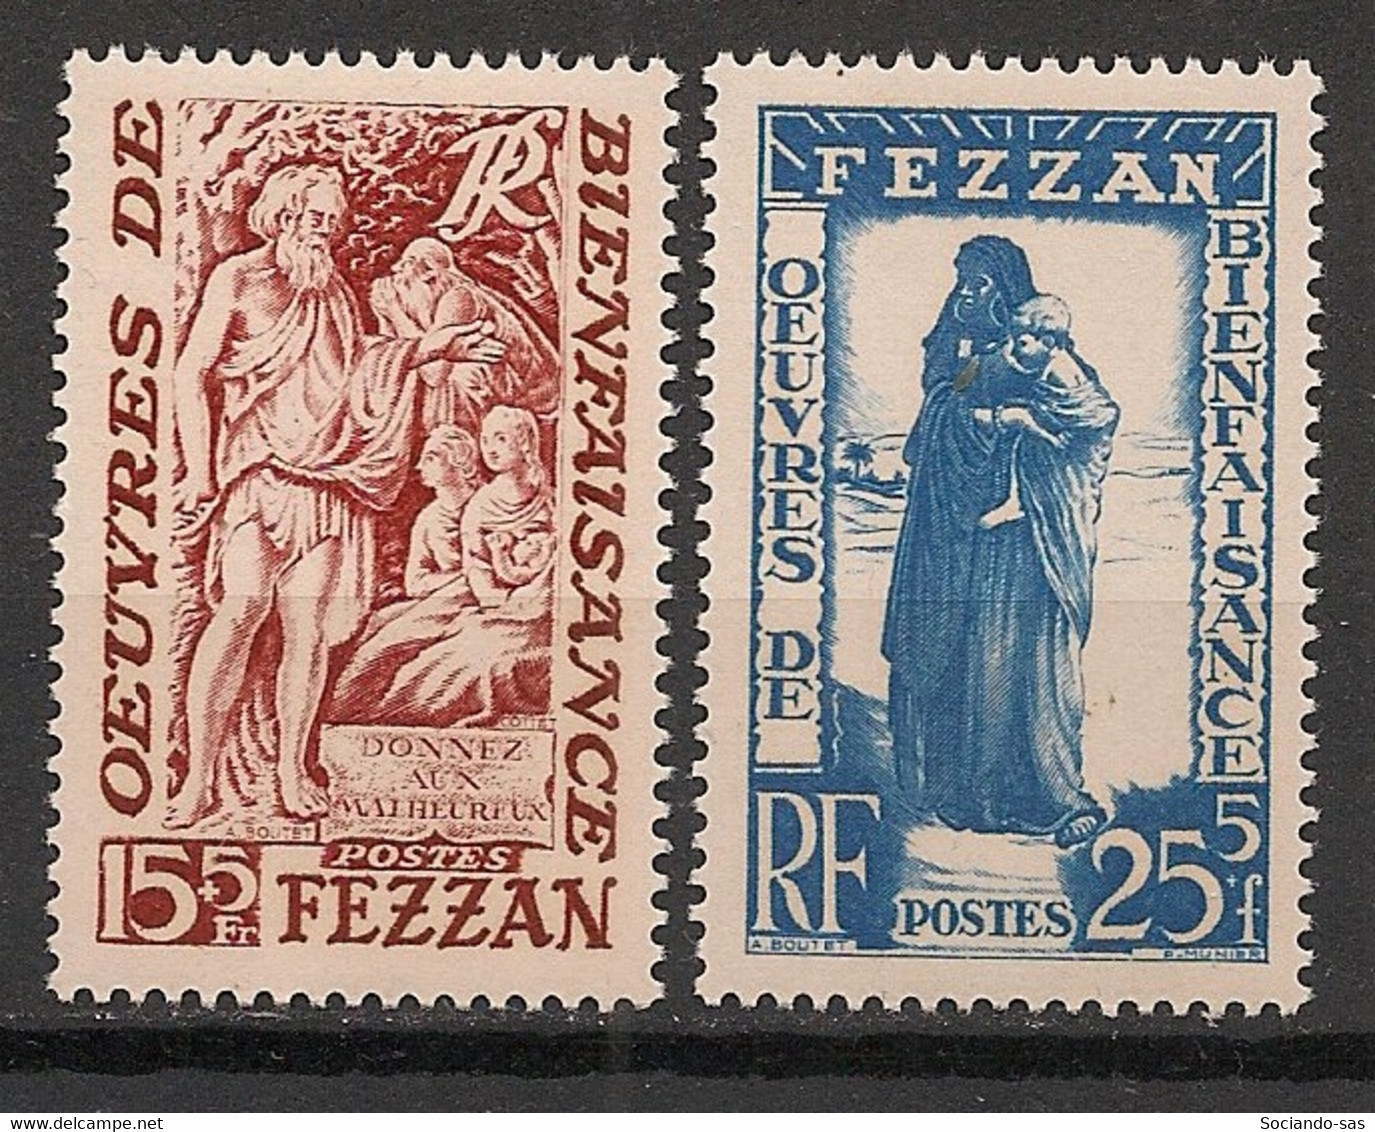 FEZZAN - 1950 - N°Yv. 54 à 55 - Série Complète - Neuf Luxe ** / MNH / Postfrisch - Ungebraucht